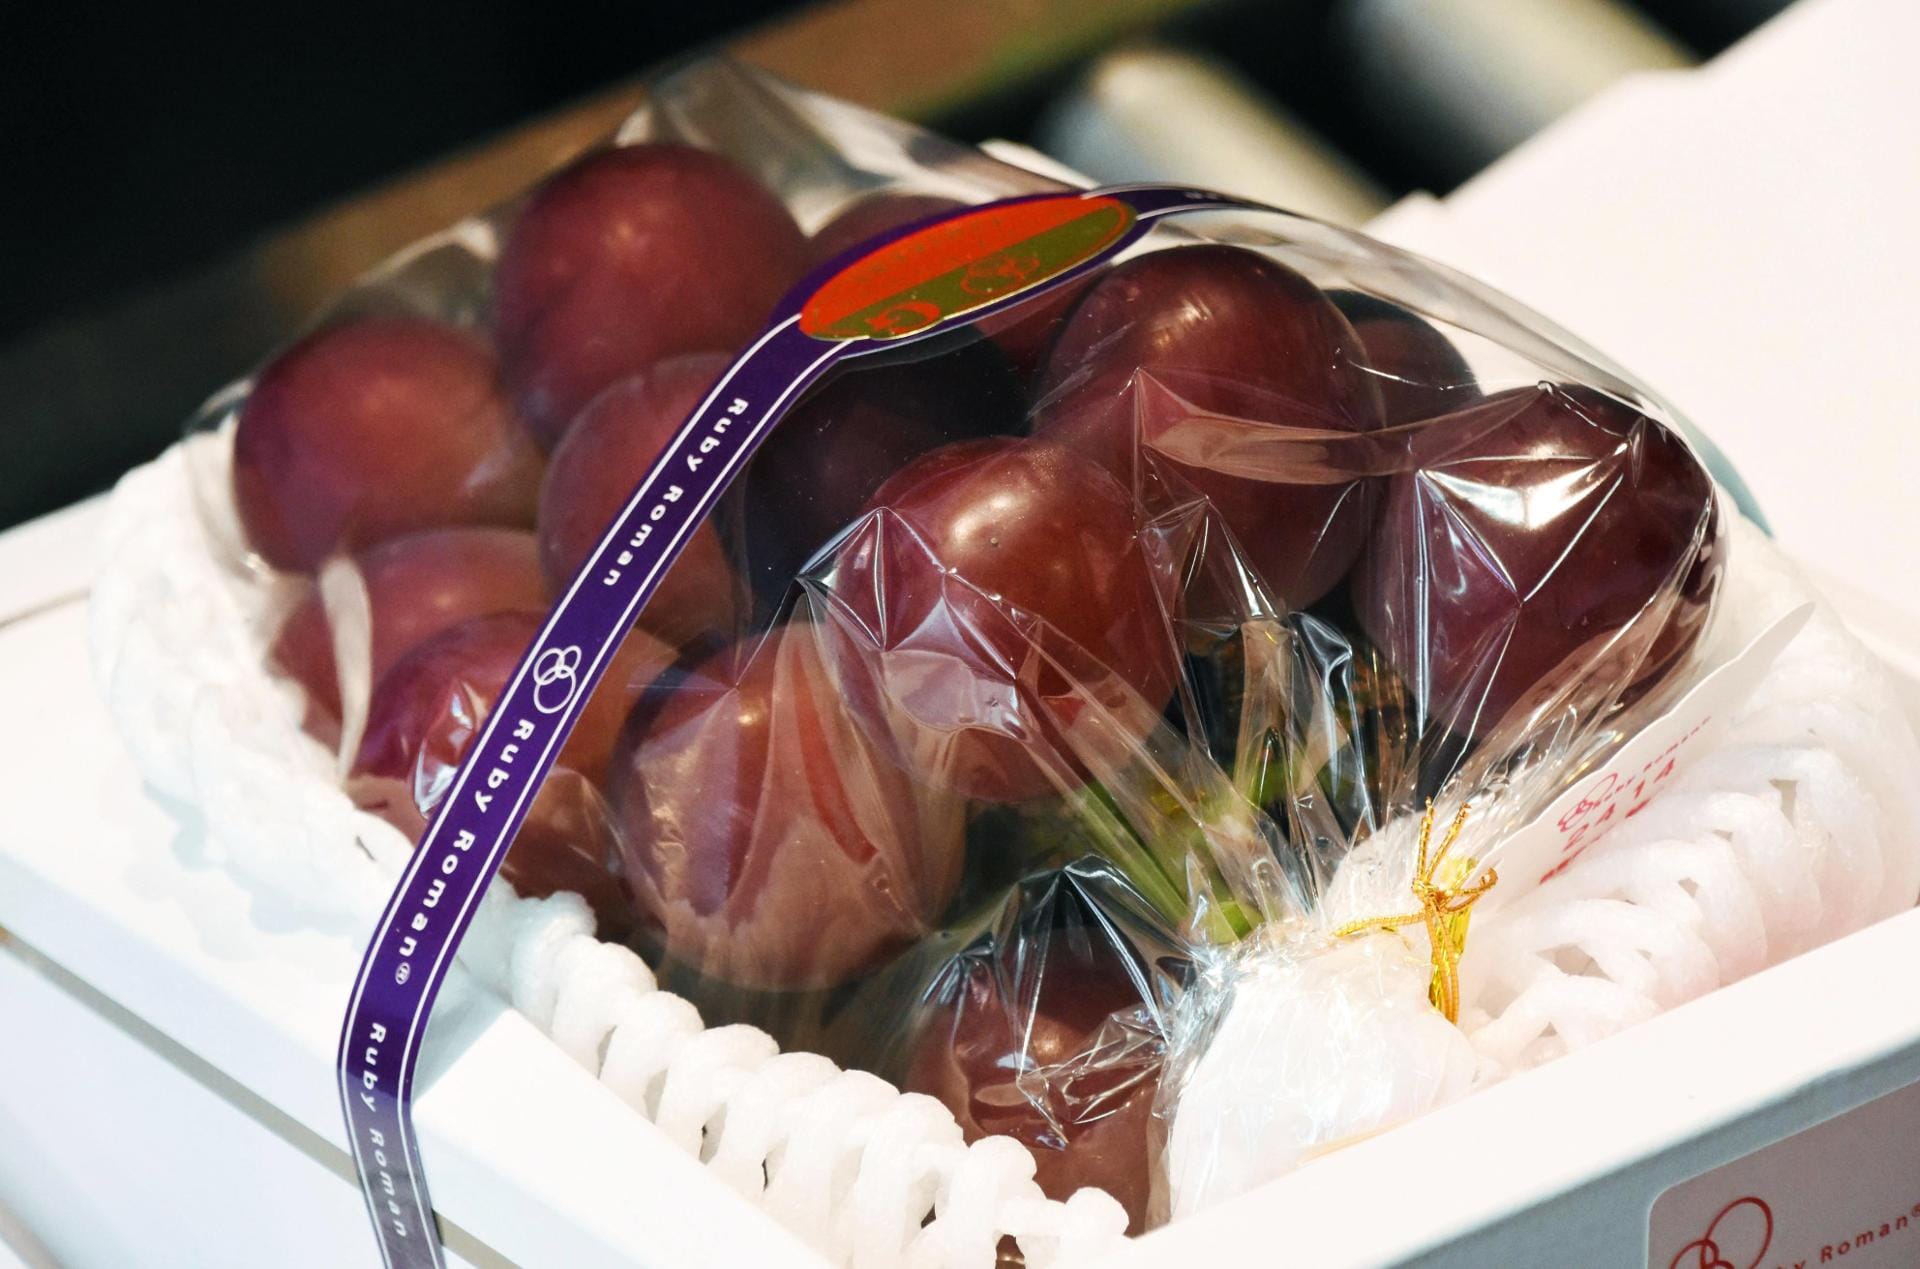 Frische Früchte sind in Japan oft ein Prestige-Objekt. Das im Juli 2016 für 9800 Euro ersteigerte Bündel der Sorte "Ruby Romans" zählt nur 30 Weinbeeren - eine einzelne ist damit 327 Euro wert.